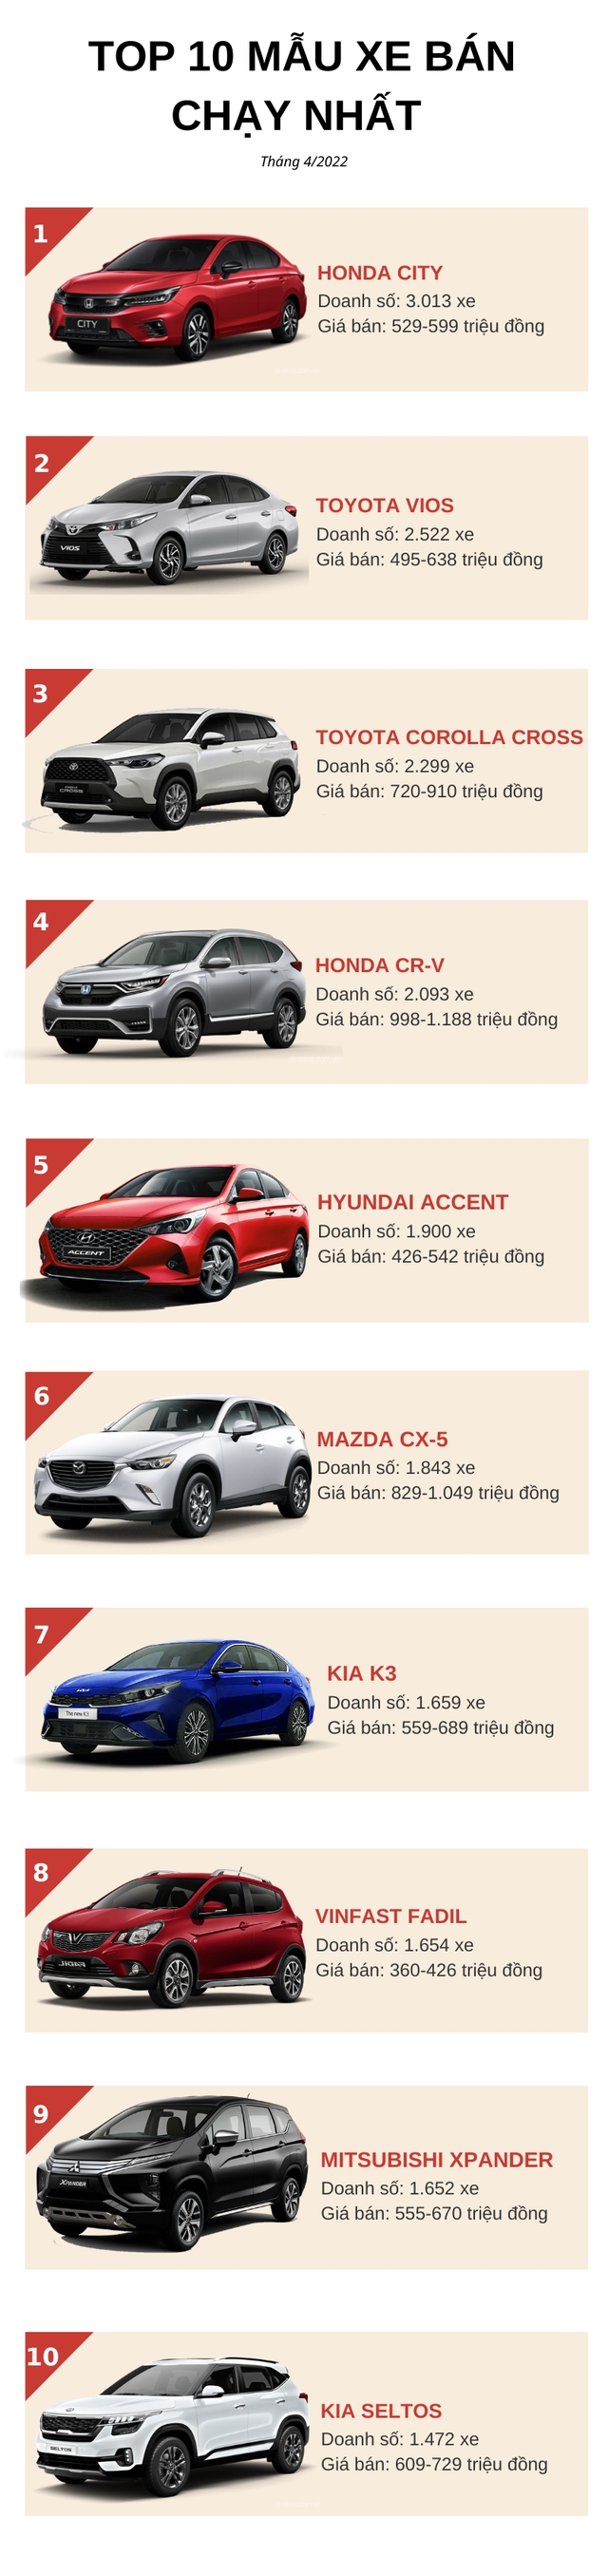 Top 10 ô tô bán chạy nhất tháng 4/2022: Ngôi vương đầy bất ngờ, Hyundai Accent và Fadil cùng tụt hạng - Ảnh 1.